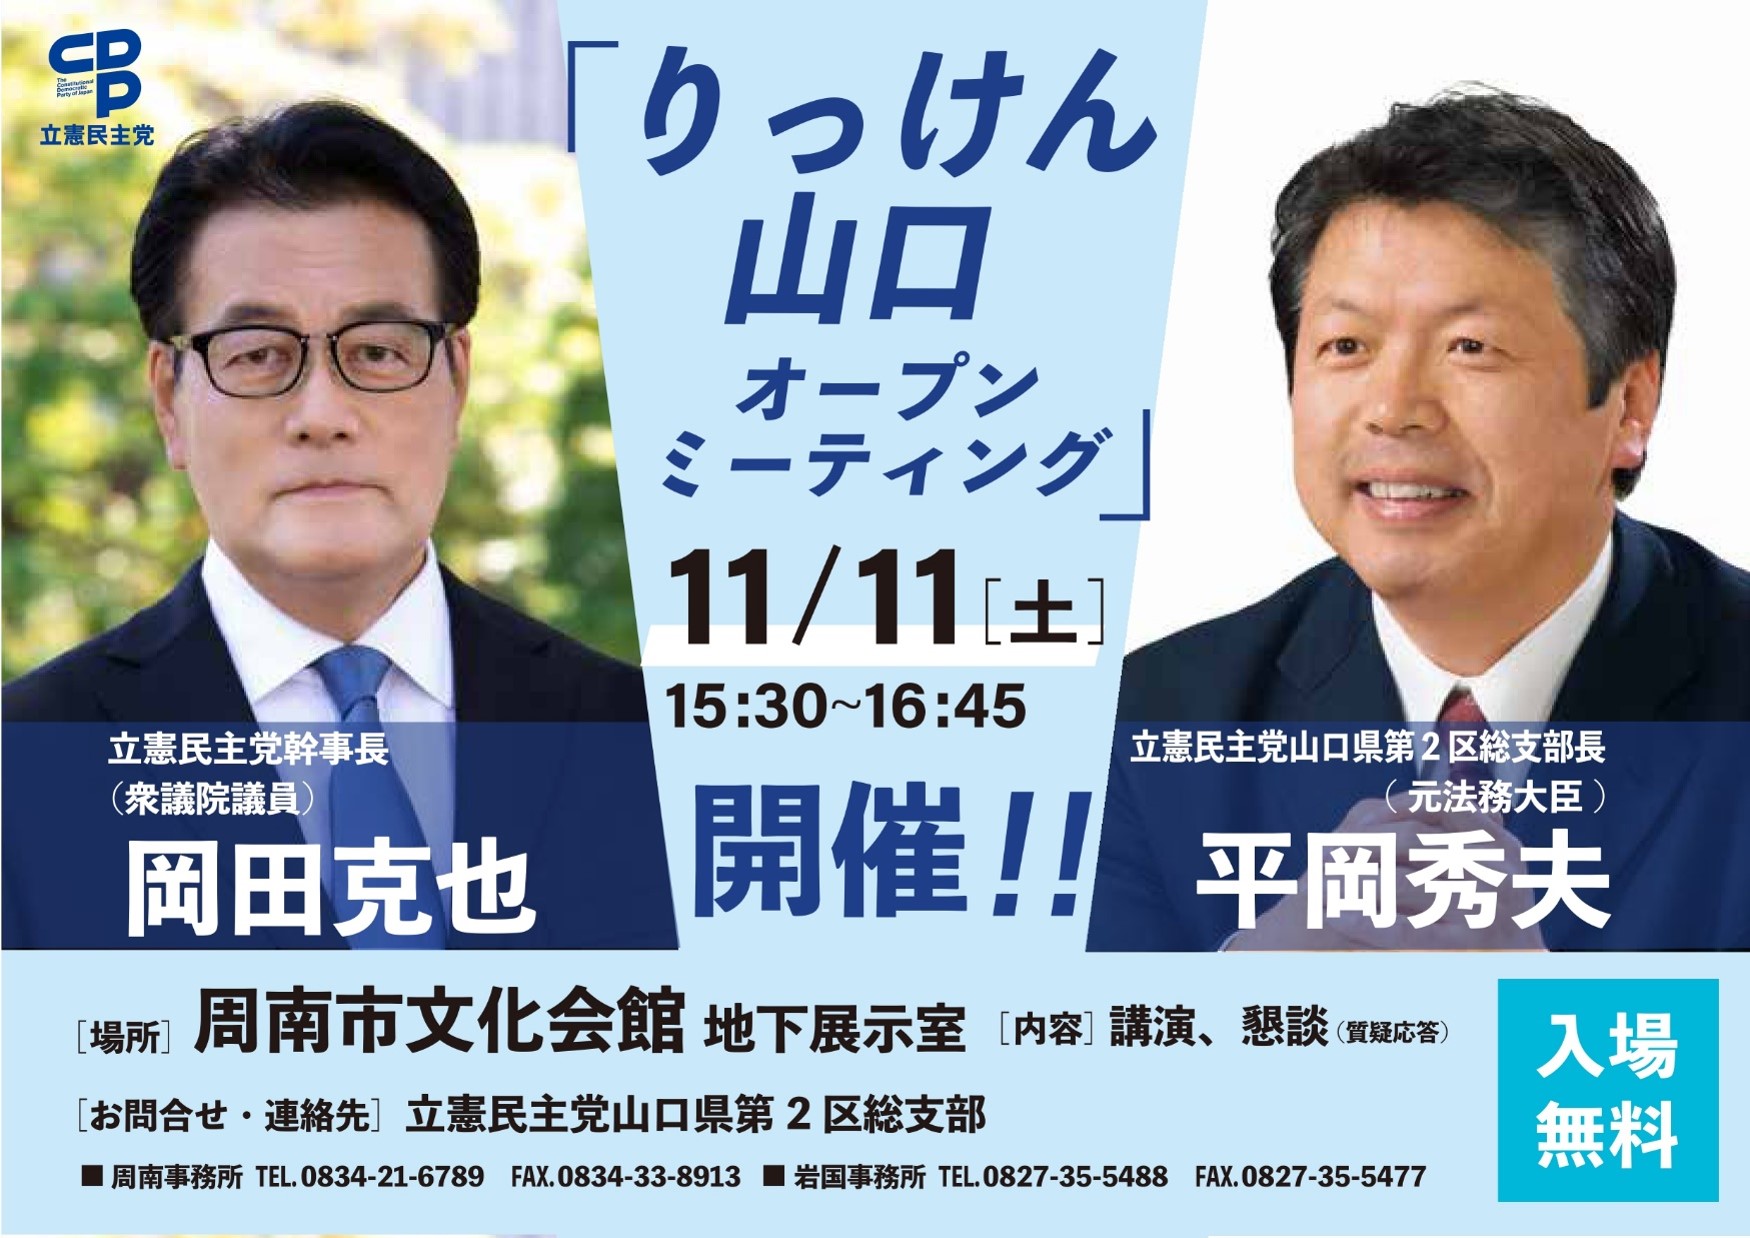 【告知】11/11岡田幹事長が周南市で講演